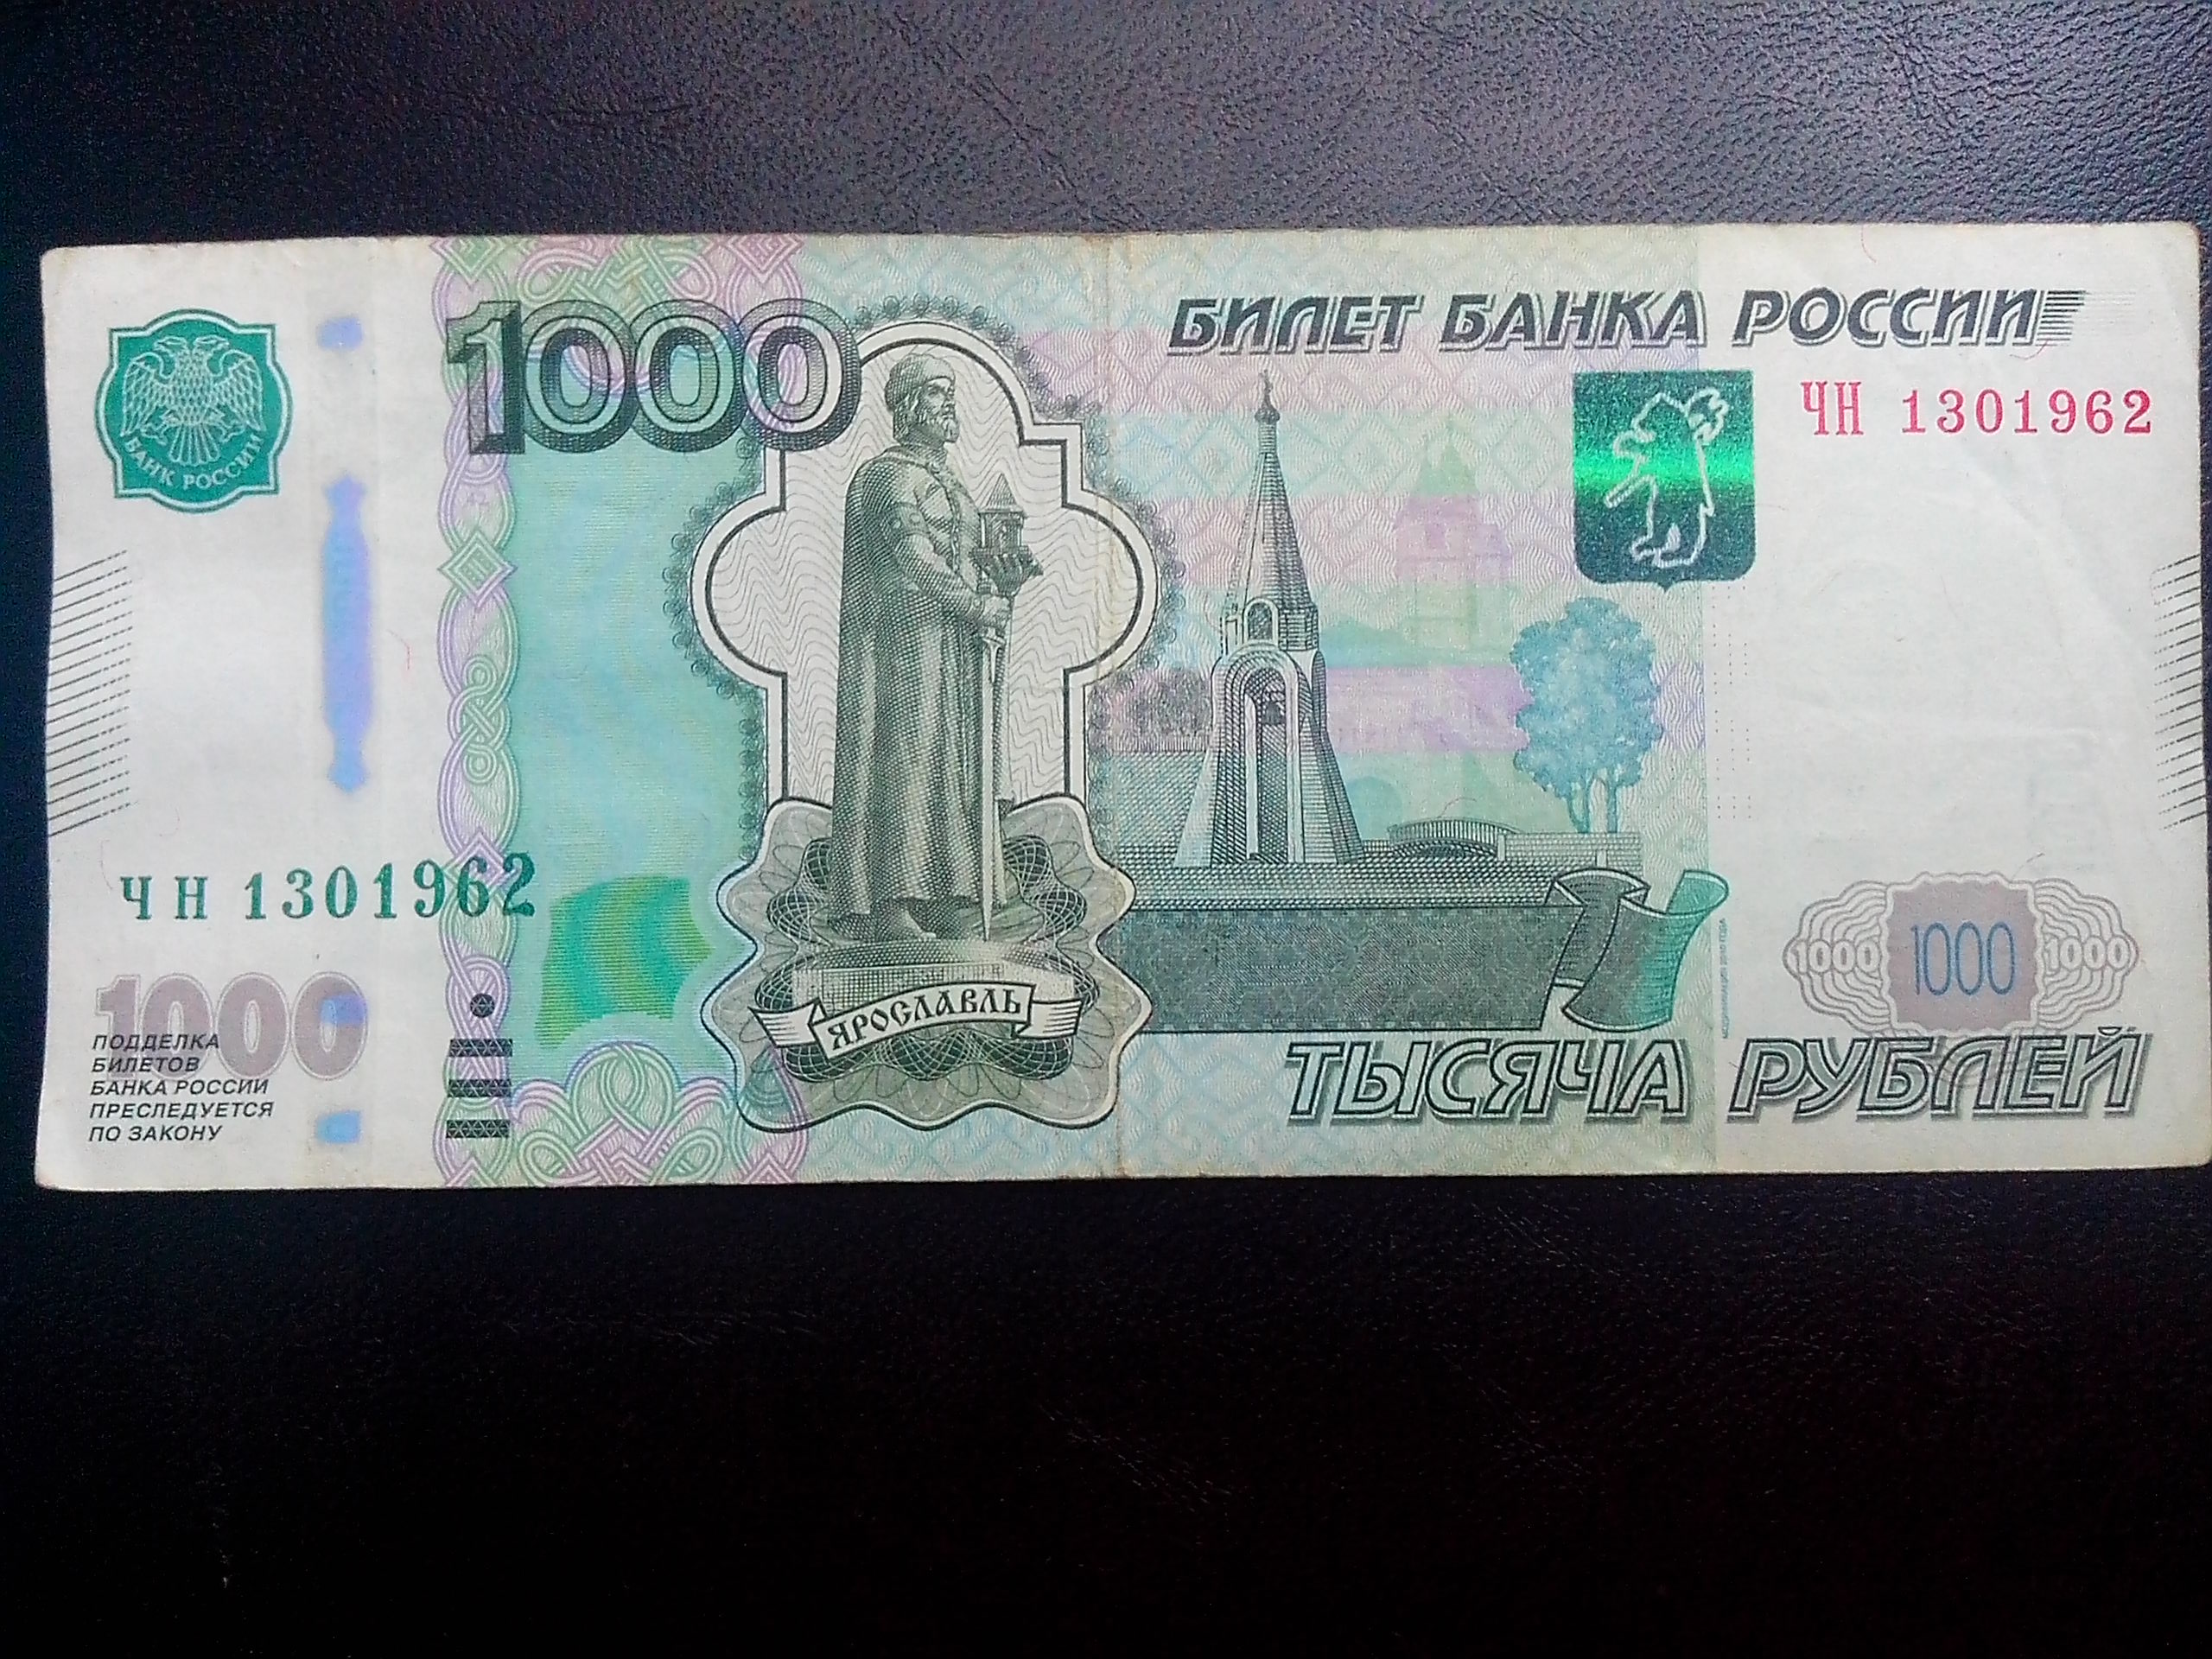 тысяча рублей фото высокого разрешения